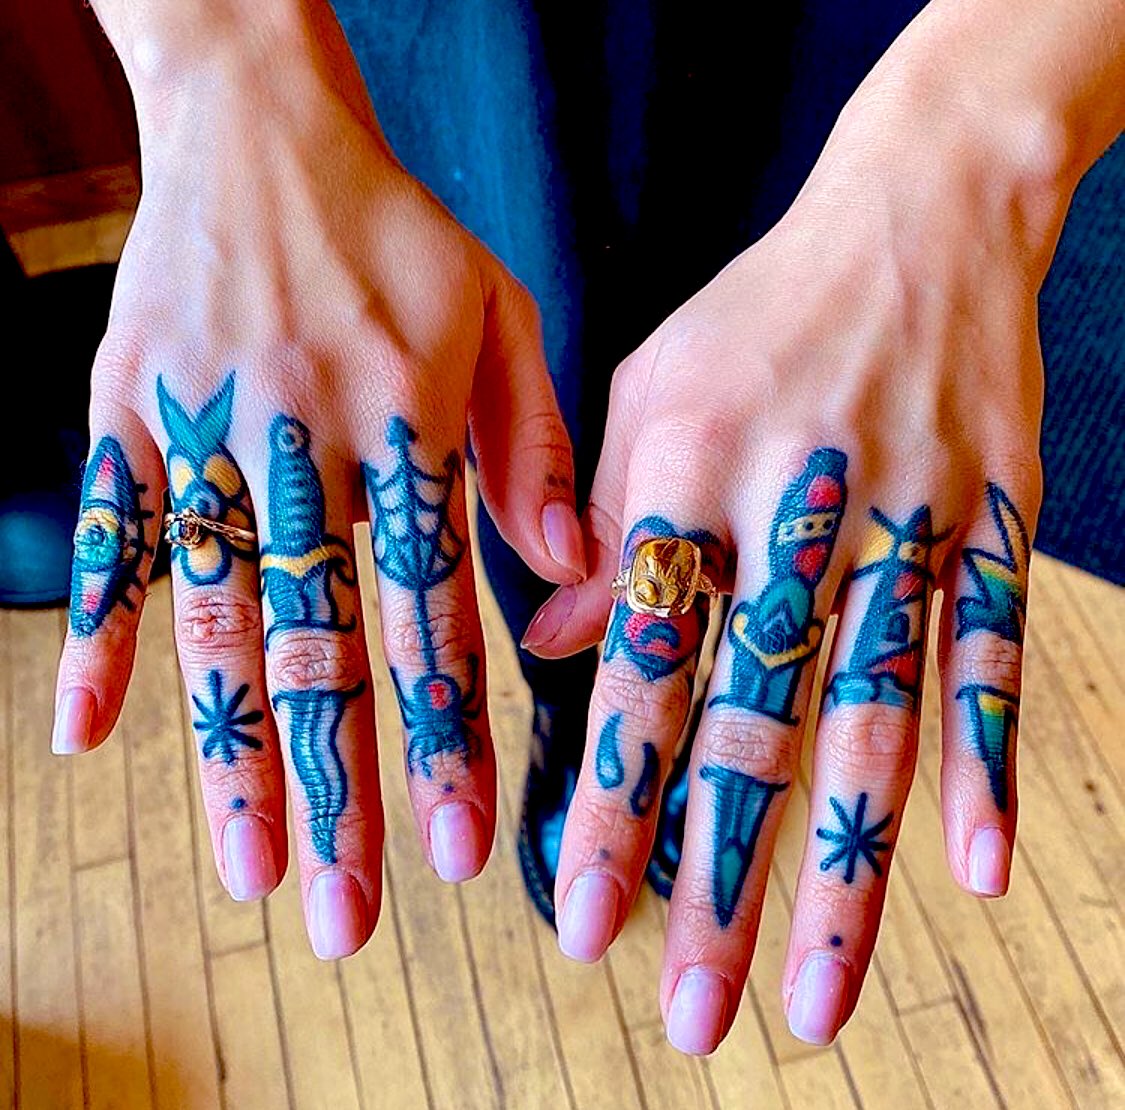 Old School Tattoo on Twitter: "Fancy Fingers #traditional #tattoo #oldschool #girl https://t.co/TX371nkWvw" / X